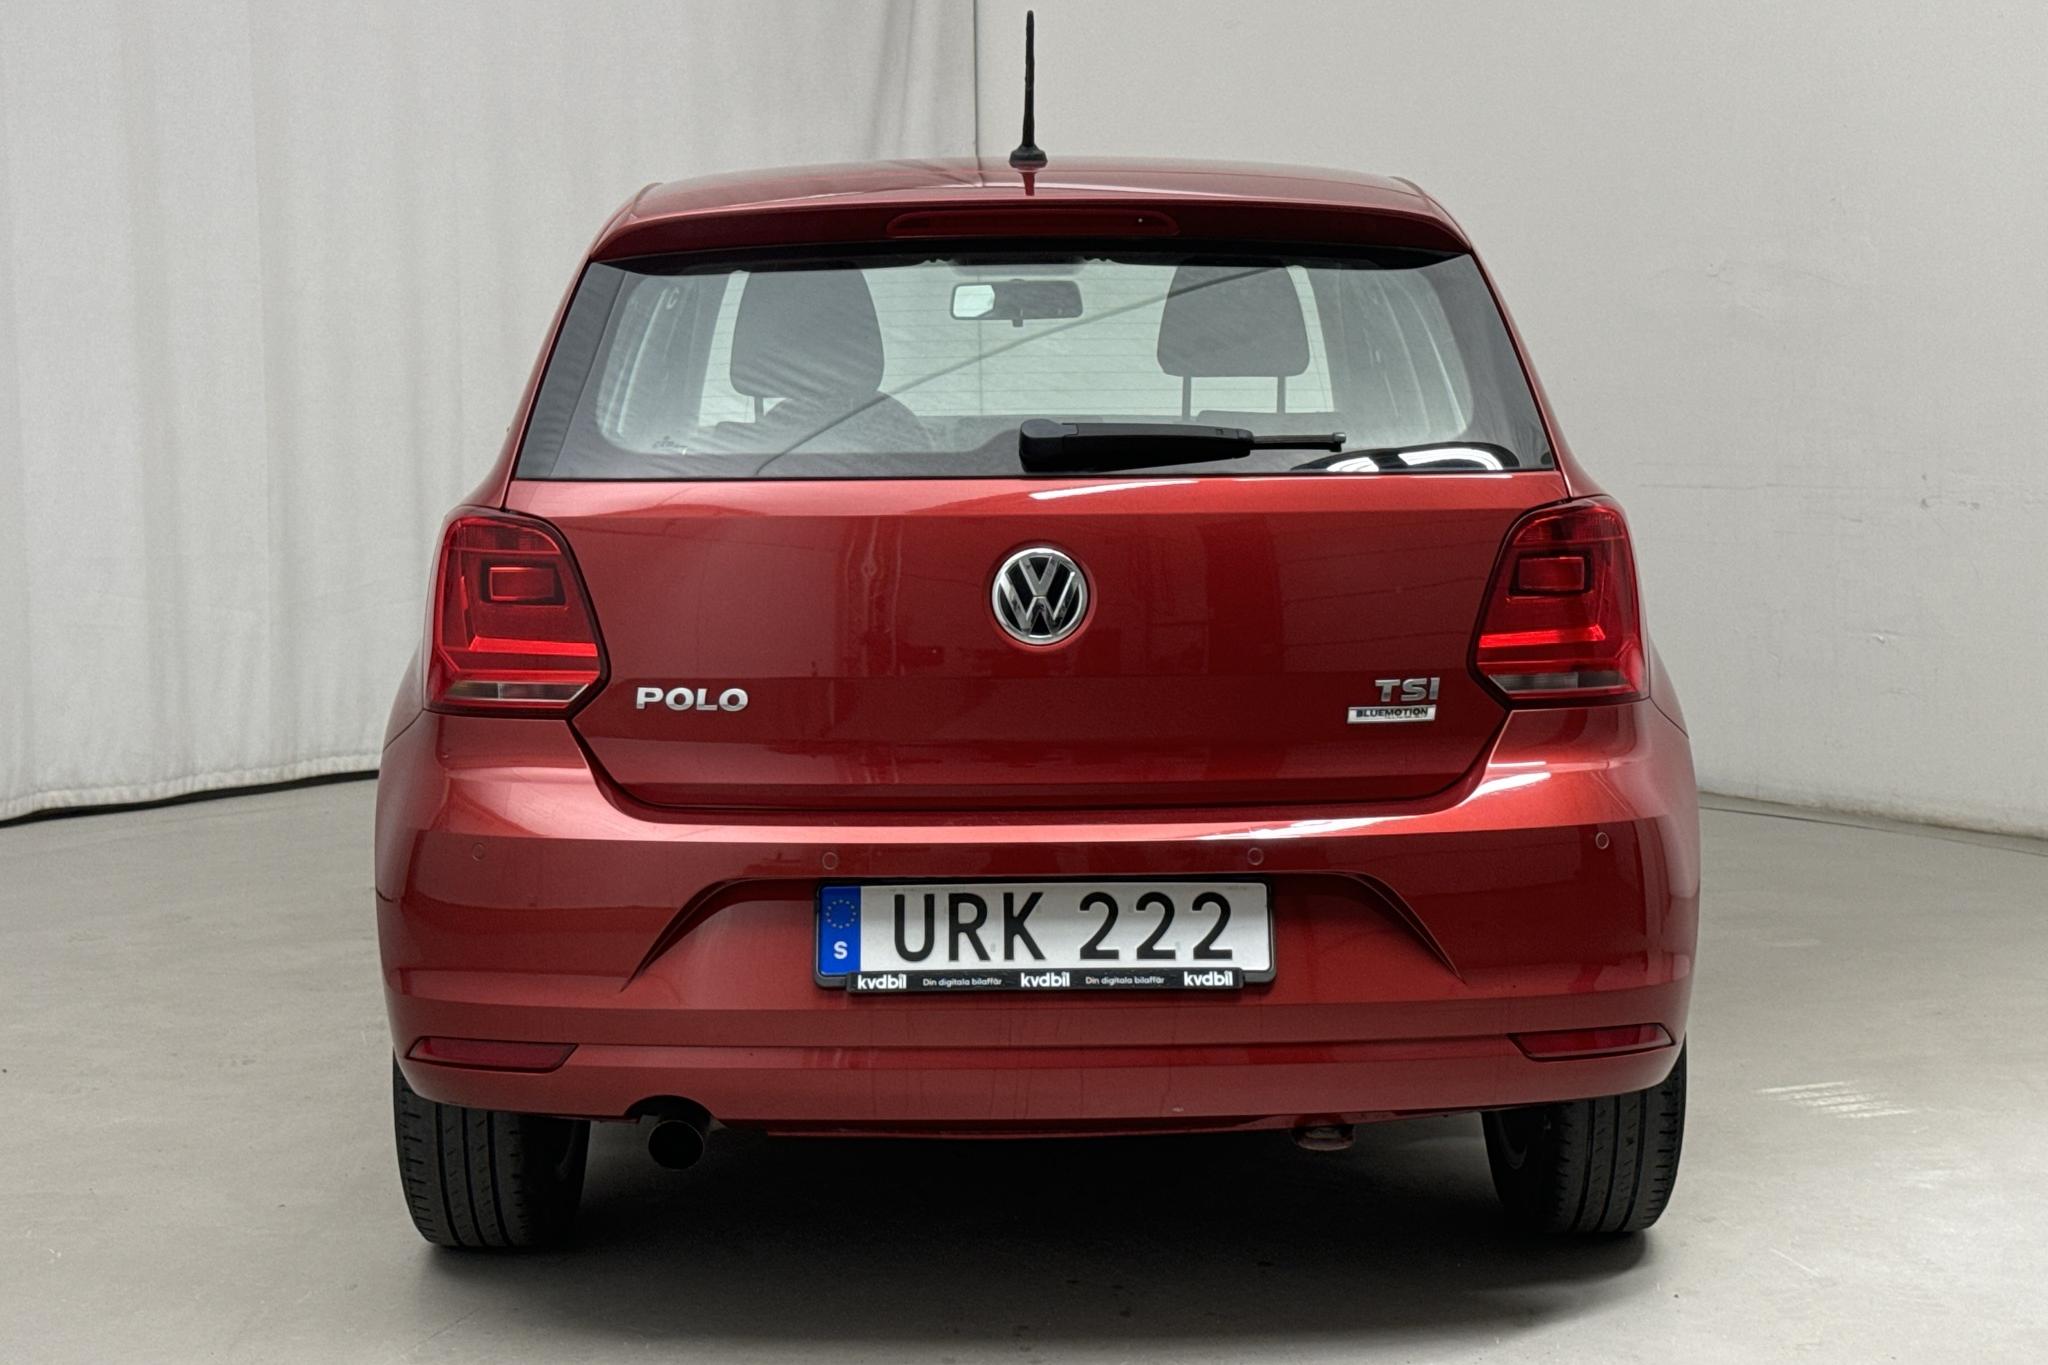 VW Polo 1.2 TSI 5dr (90hk) - 114 190 km - Manual - red - 2015